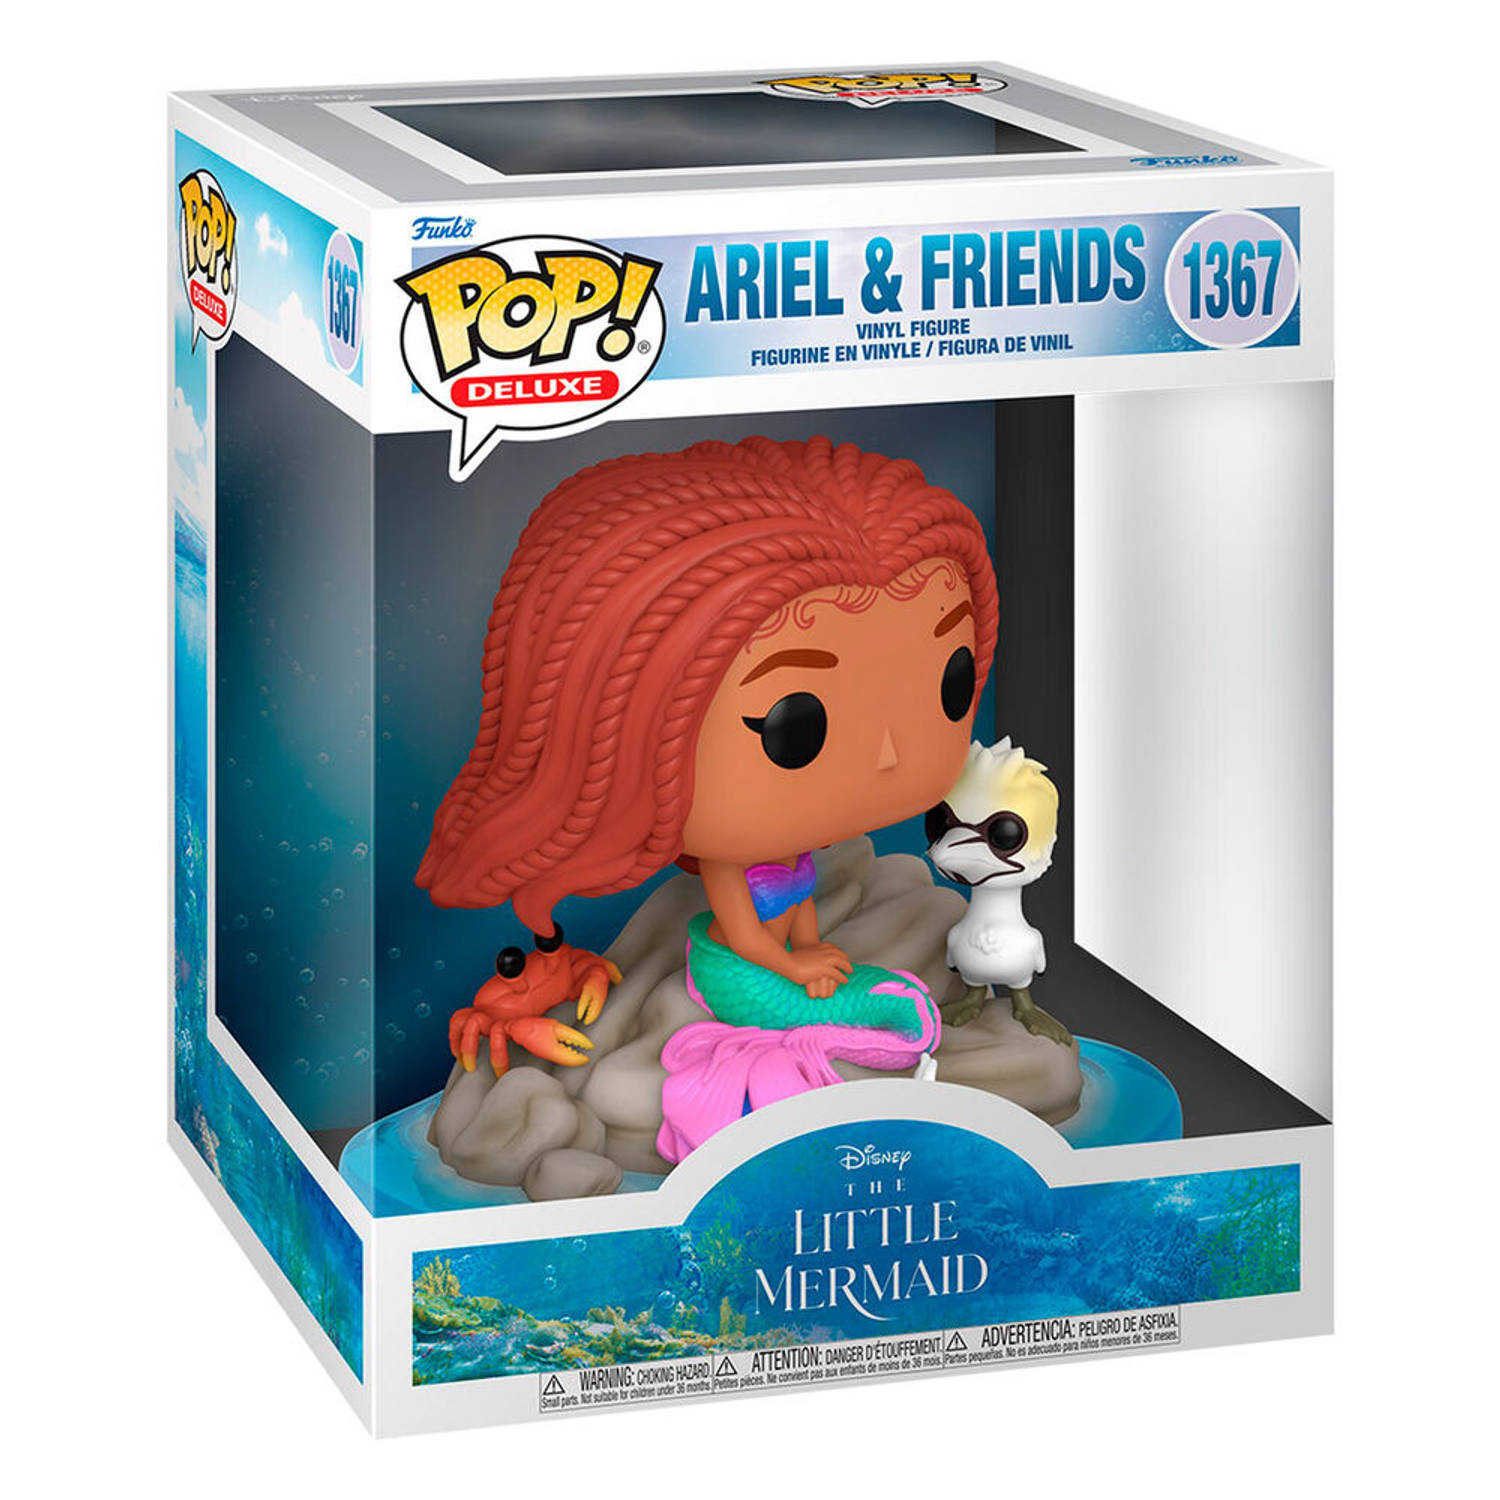 Pop Disney: The Little Mermaid Ariel and Friends Funko Pop #1367